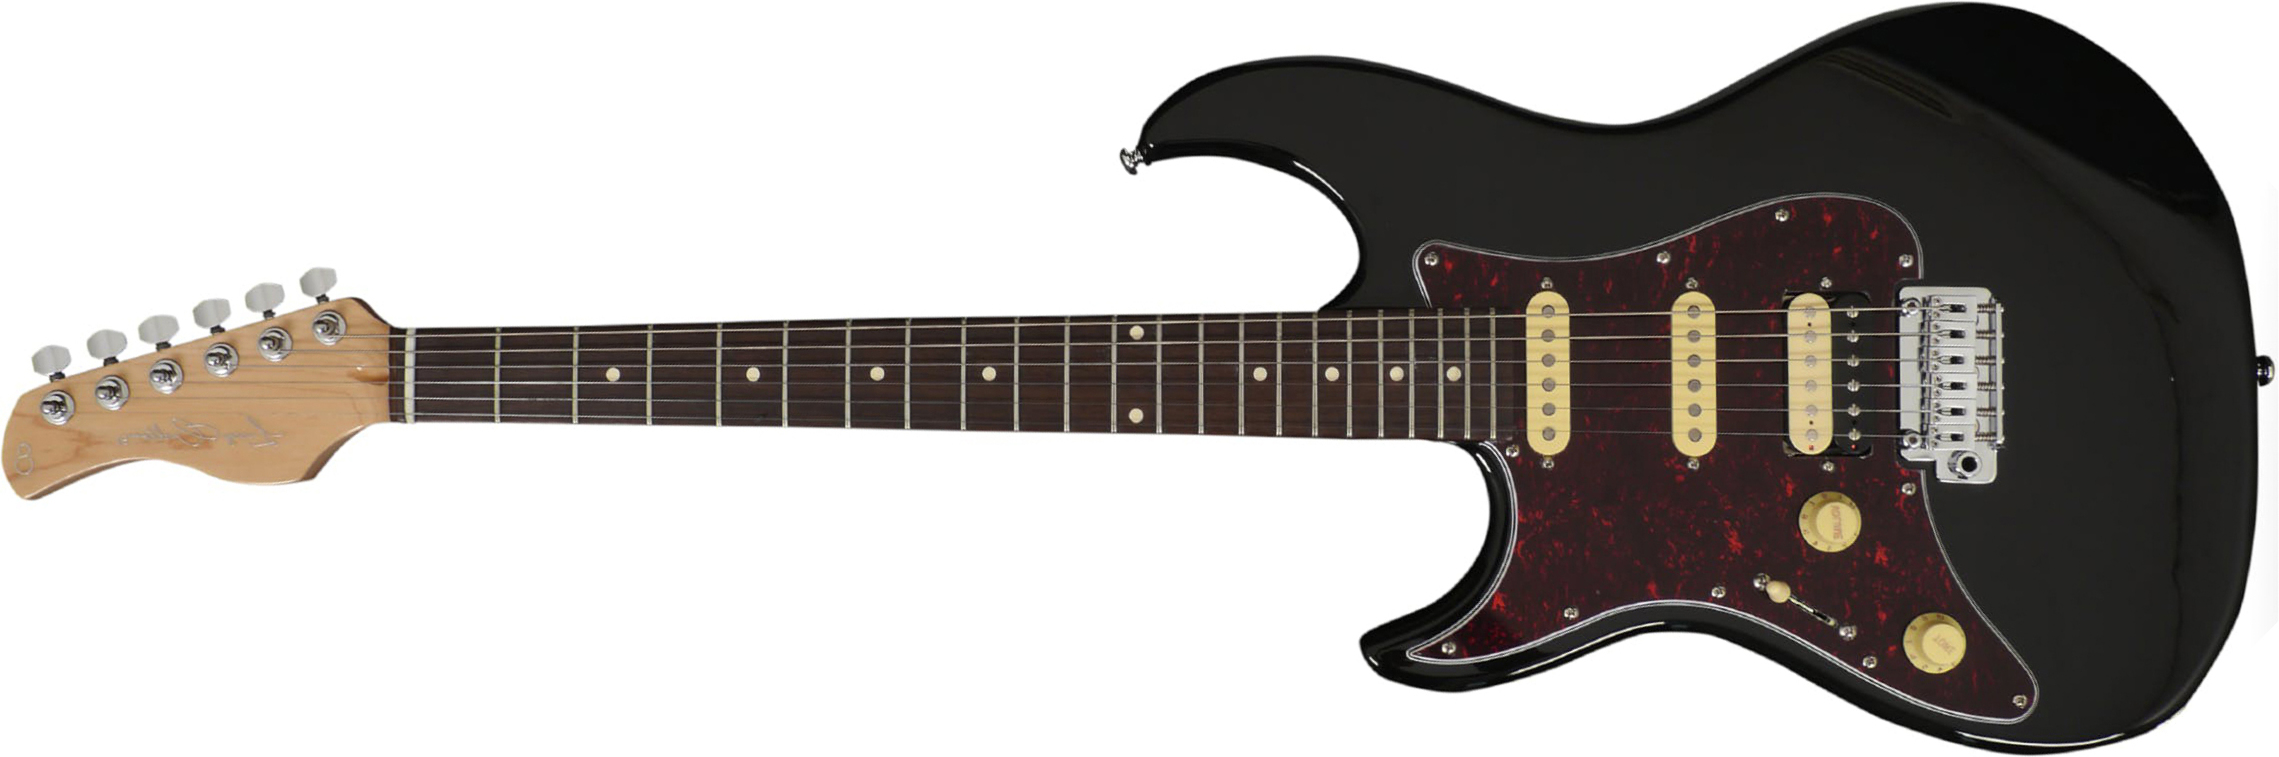 Sire Larry Carlton S3 Lh Signature Gaucher Hss Trem Rw - Black - Linkshandige elektrische gitaar - Main picture